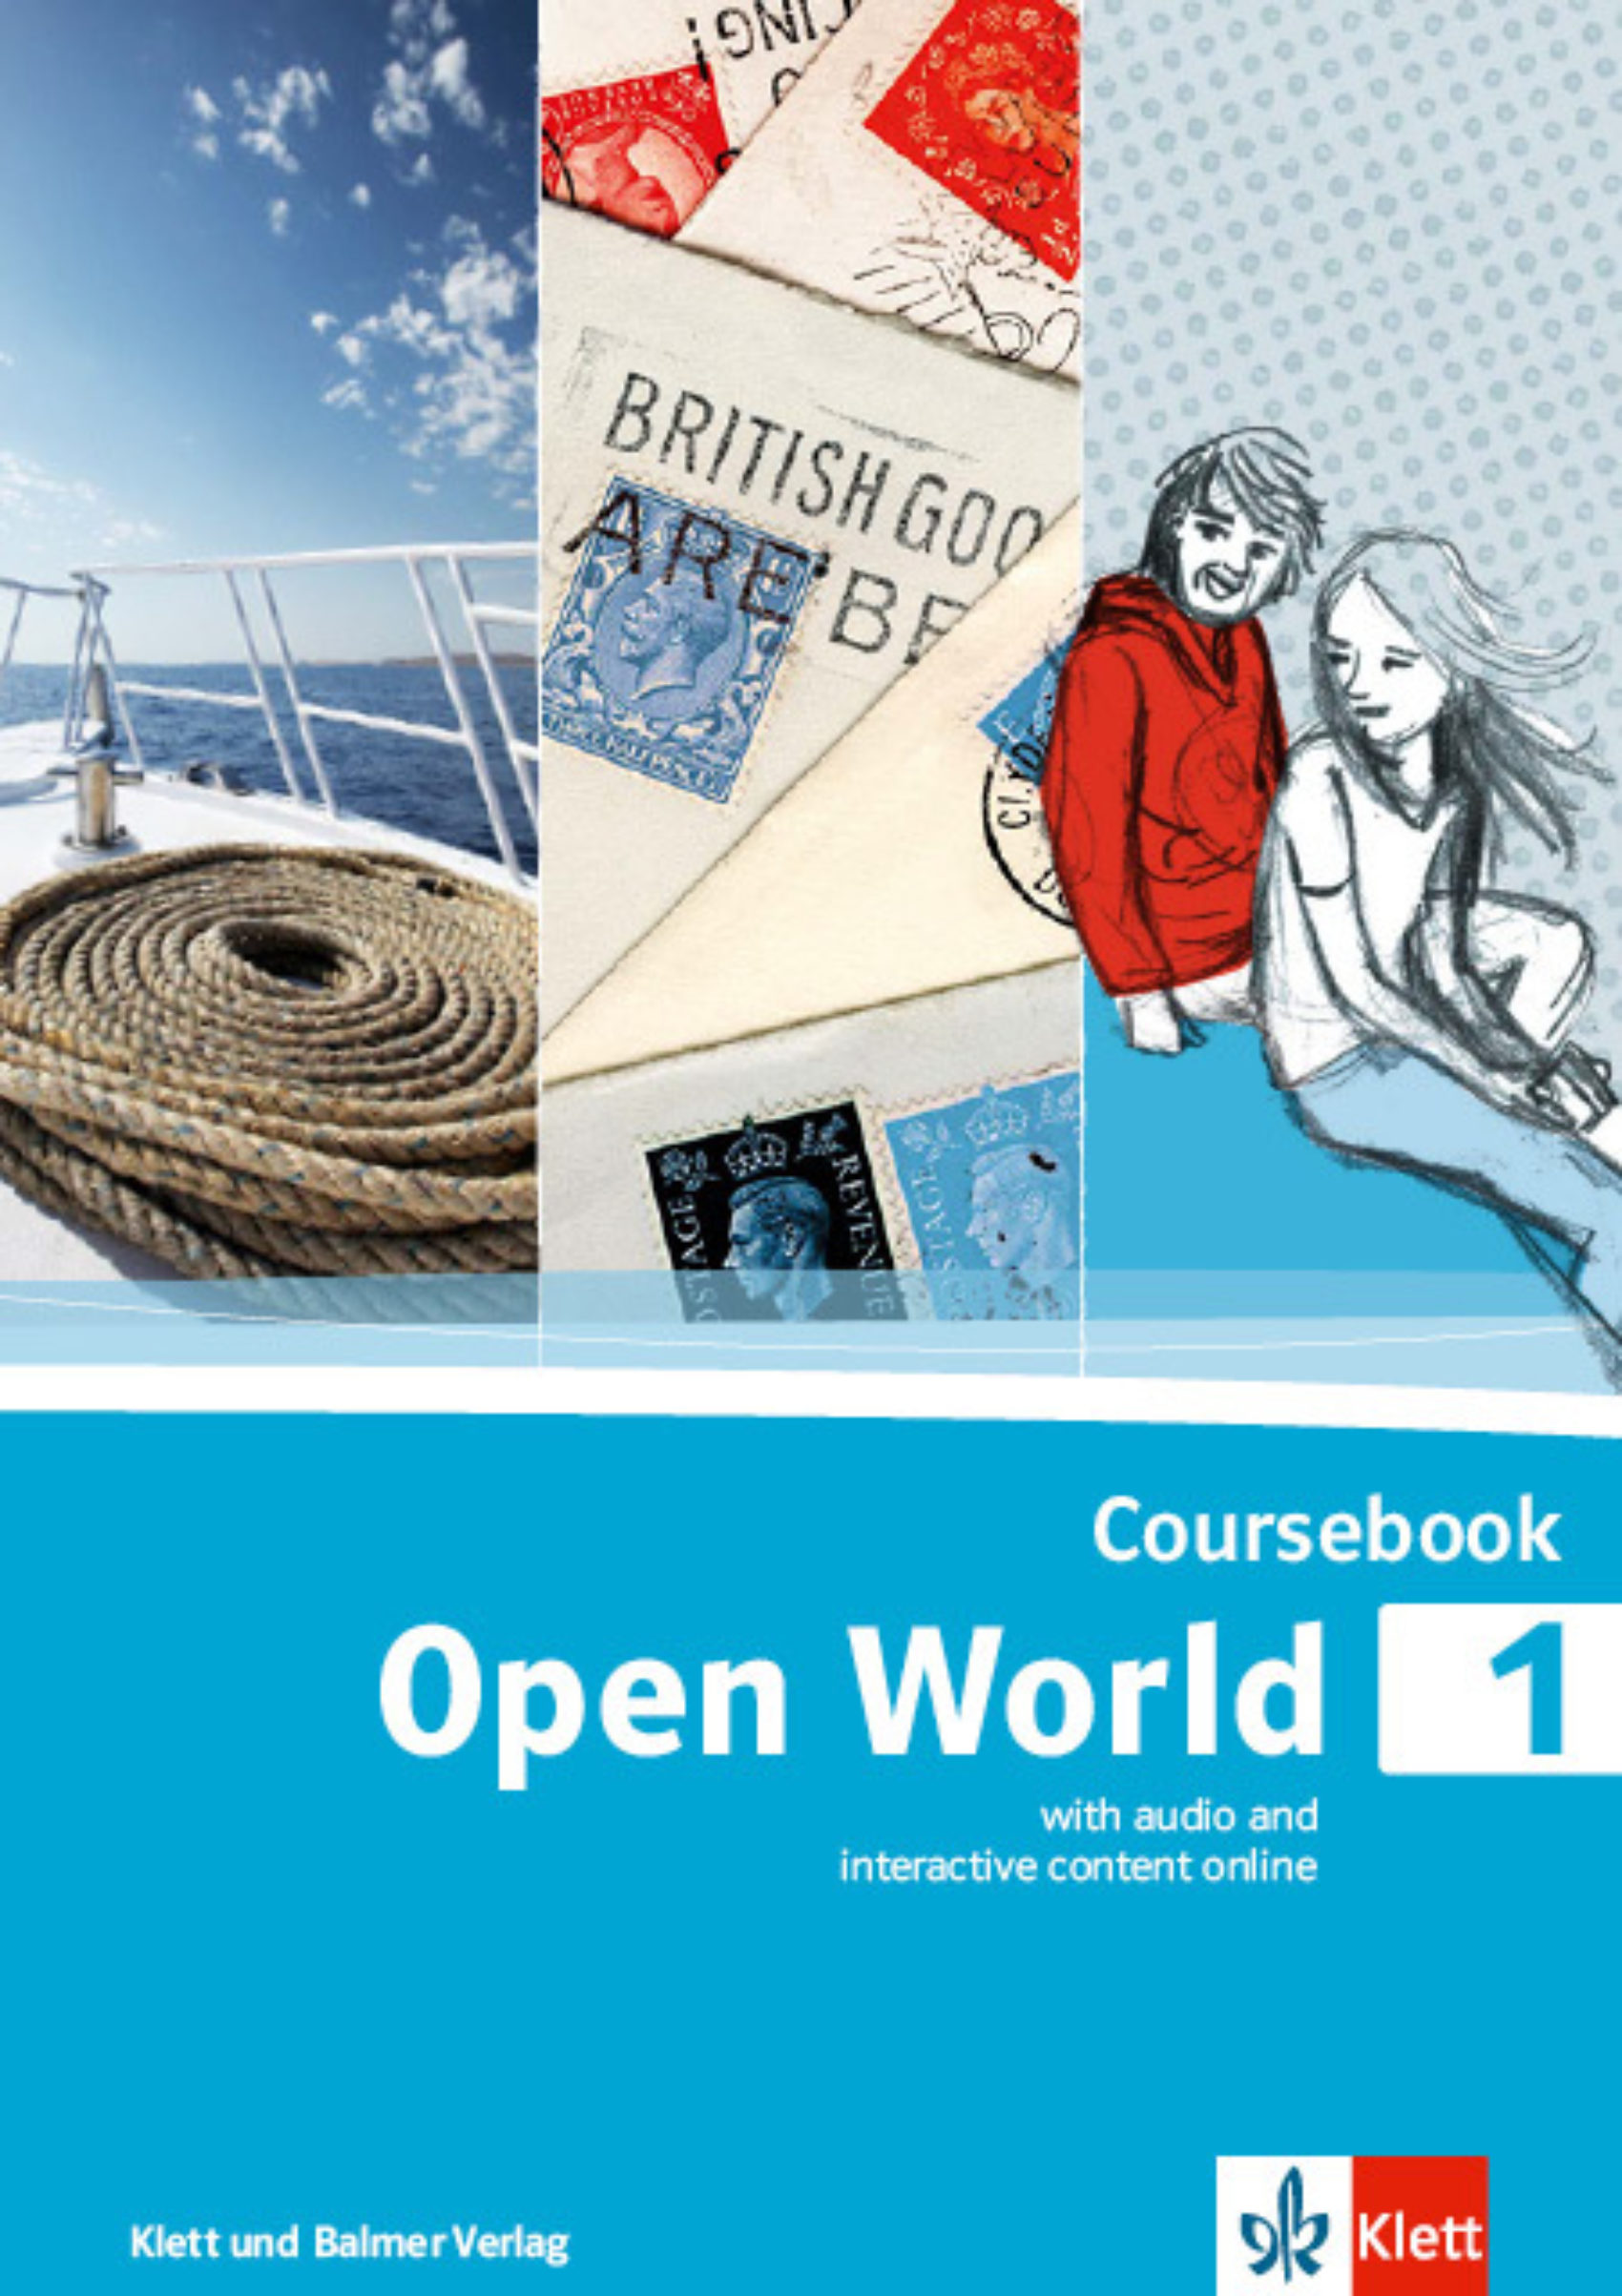 Coursebook open world 1 978 3 264 84250 0 klett und balmer